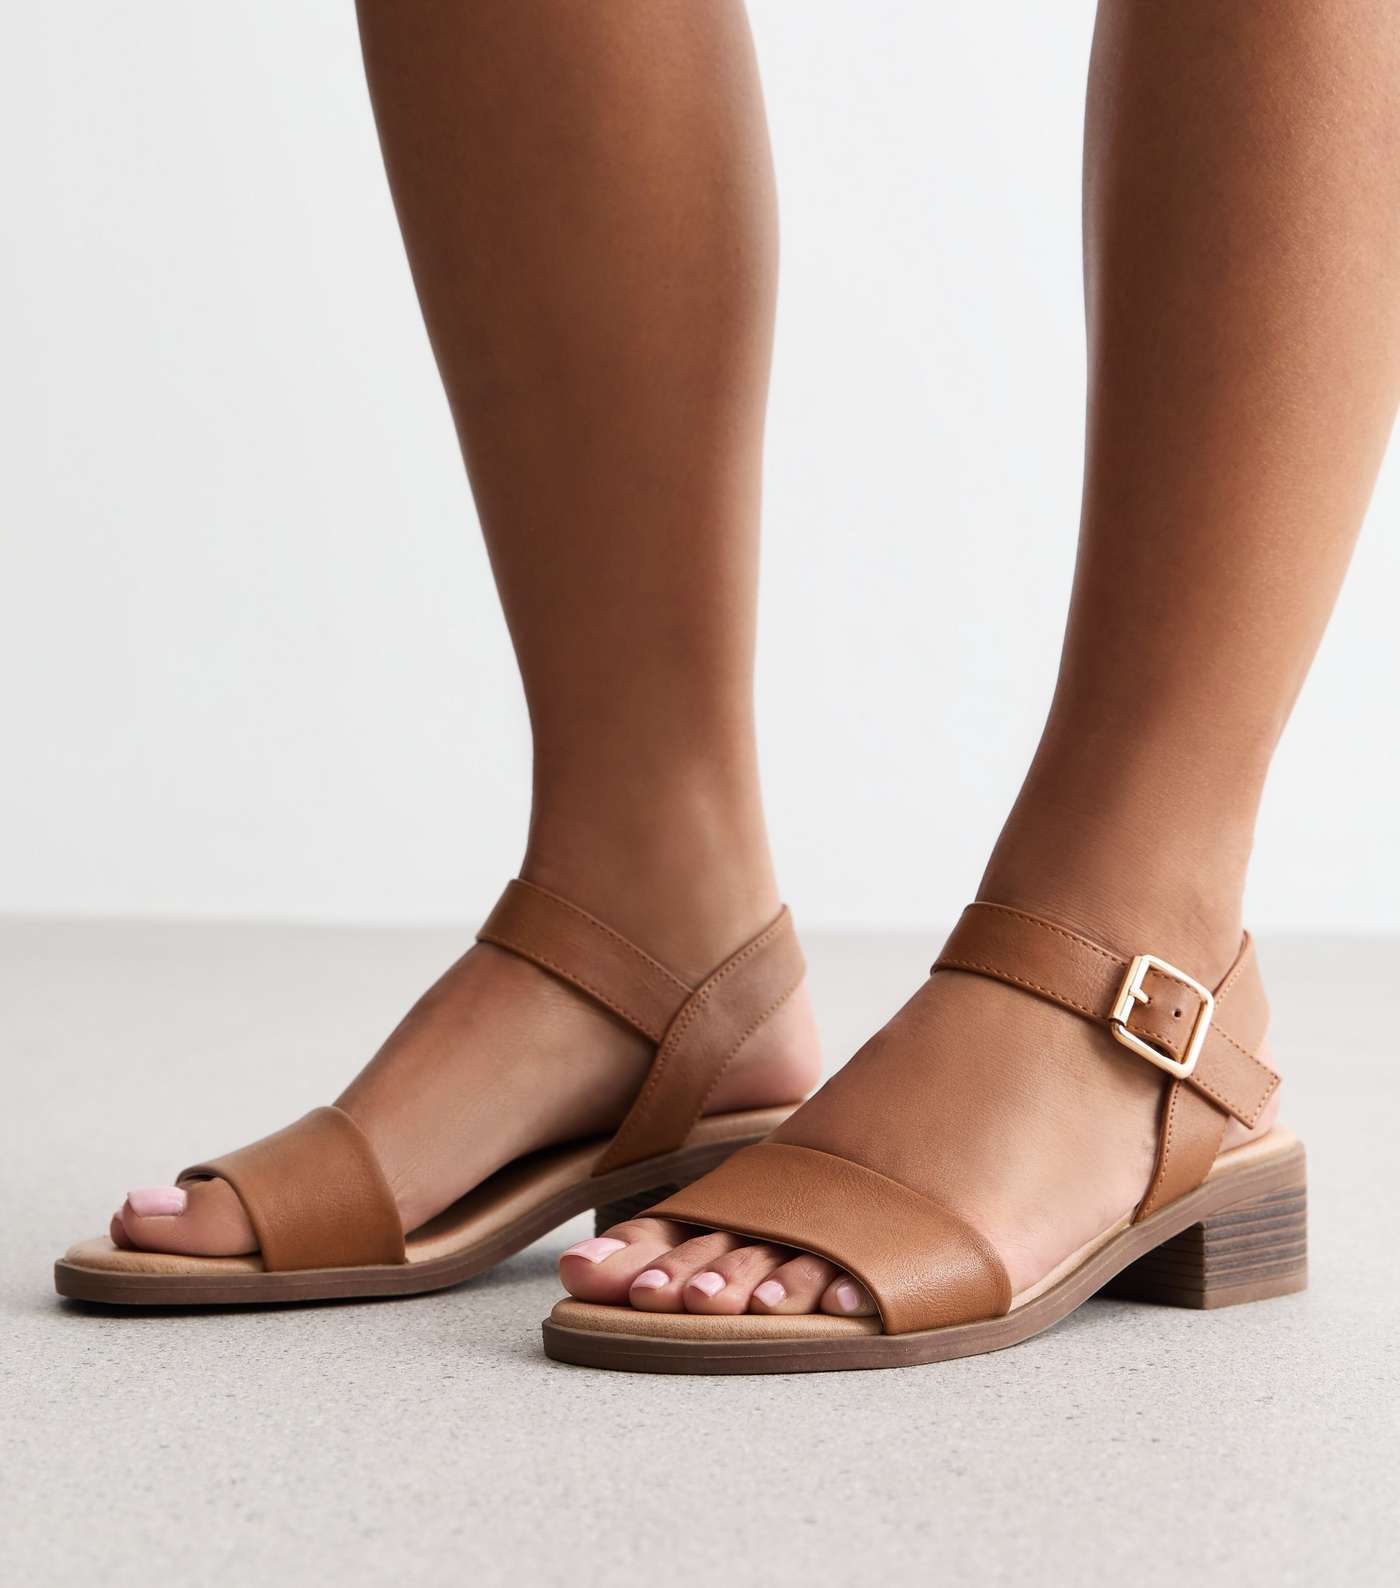 Tan Leather-Look Low Block Heel Sandals Image 2